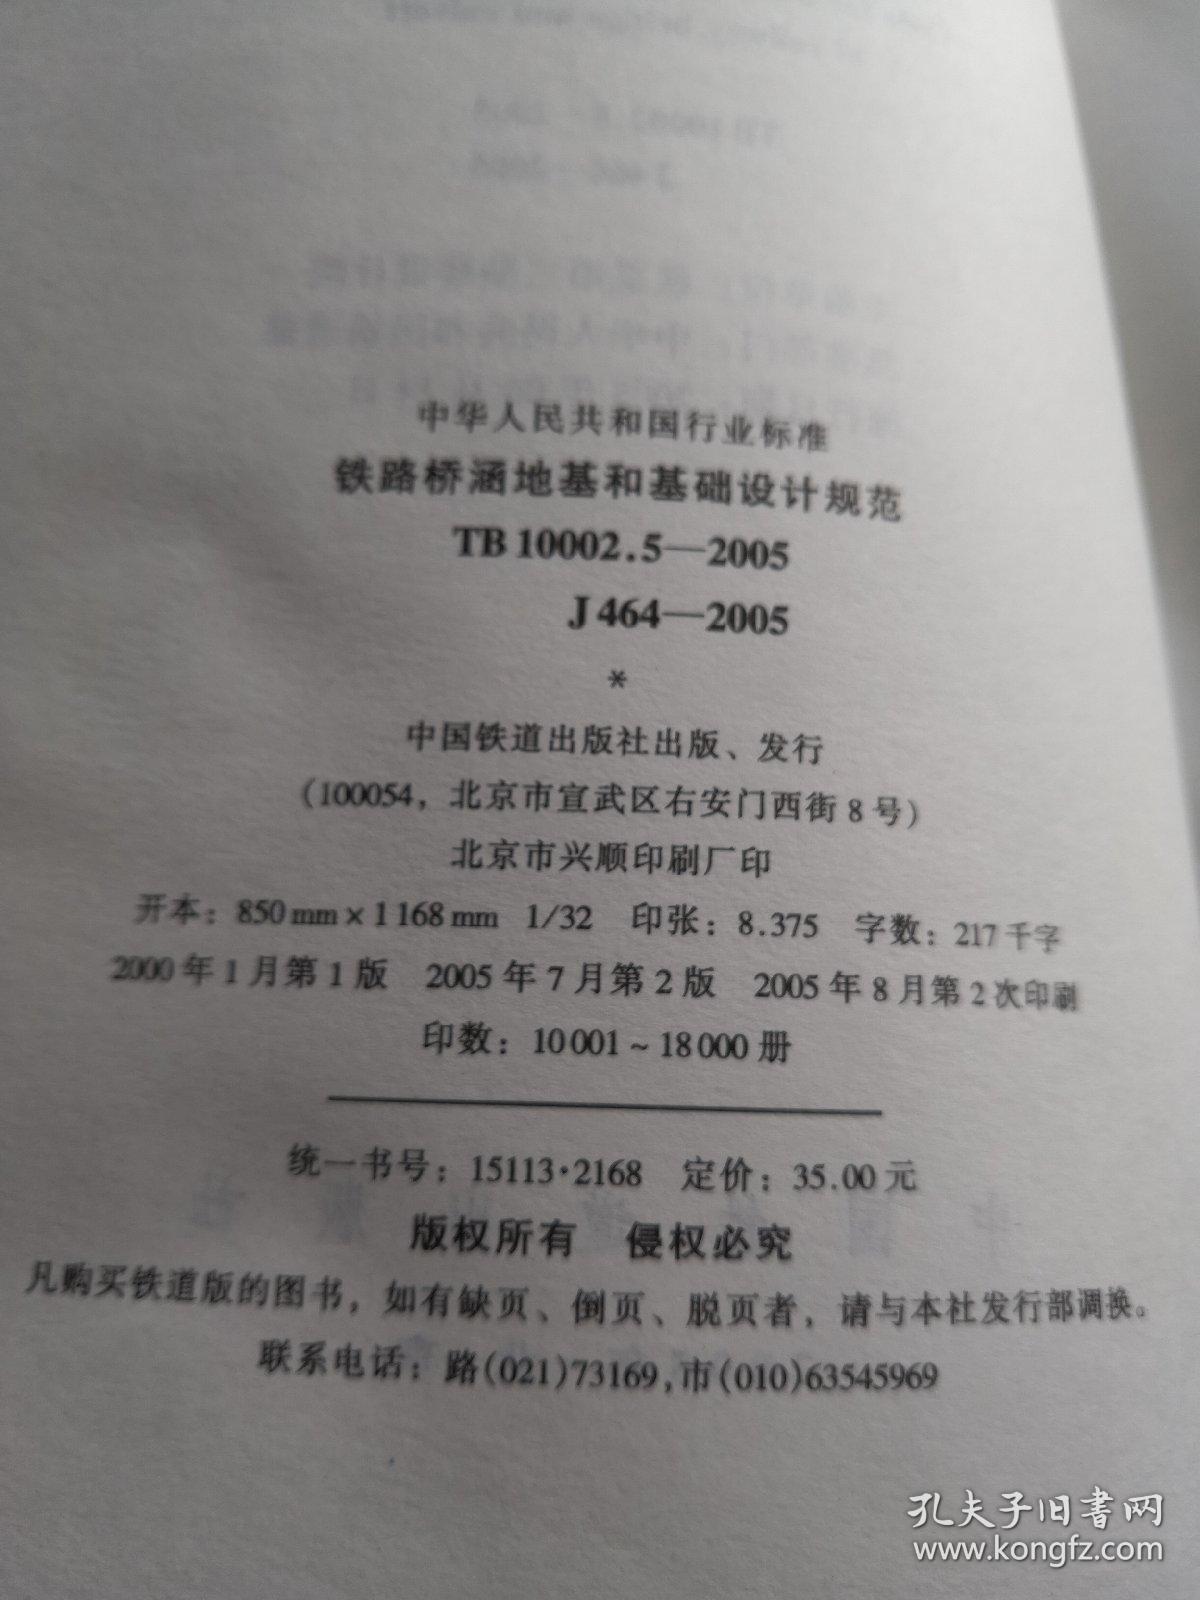 中华人民共和国行业标准铁路桥涵地基和基础设计规范TB 10002.5-2005
J464-2005